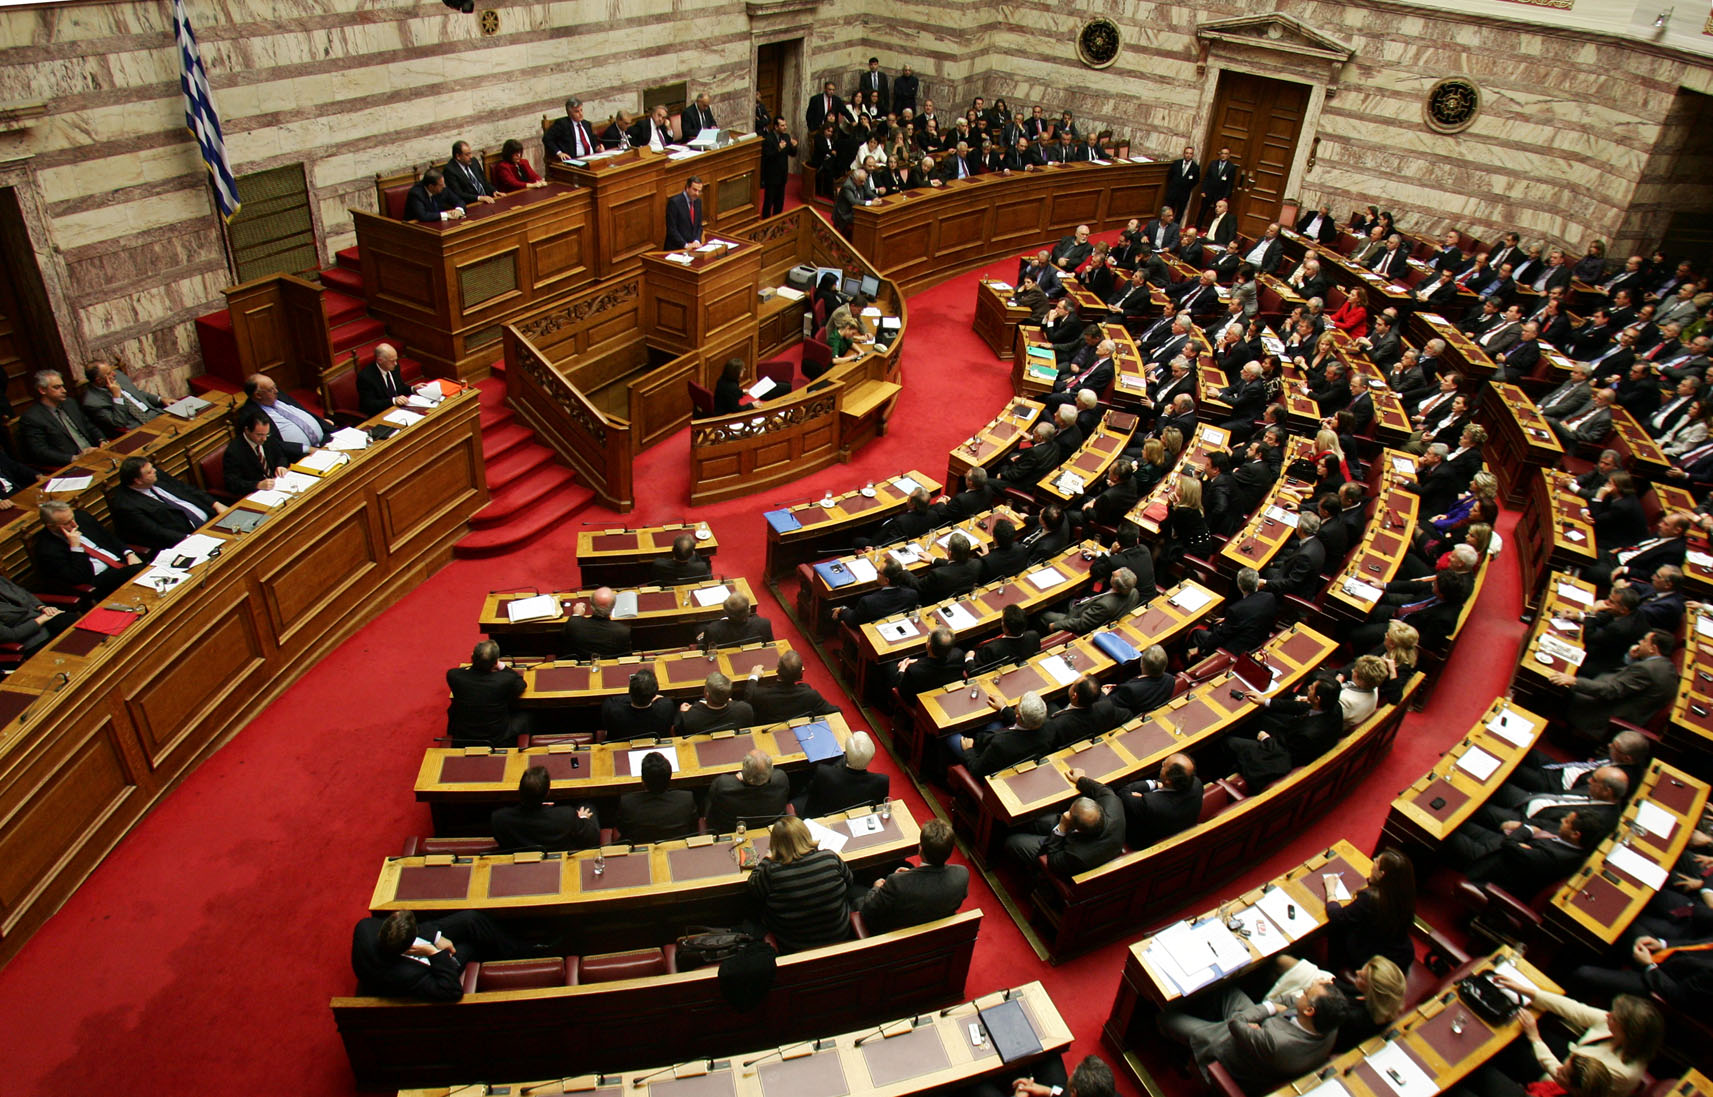 Στην Βουλή κατατέθηκε το νομοσχέδιο για την νομική αναγνώριση της ταυτότητας φύλου